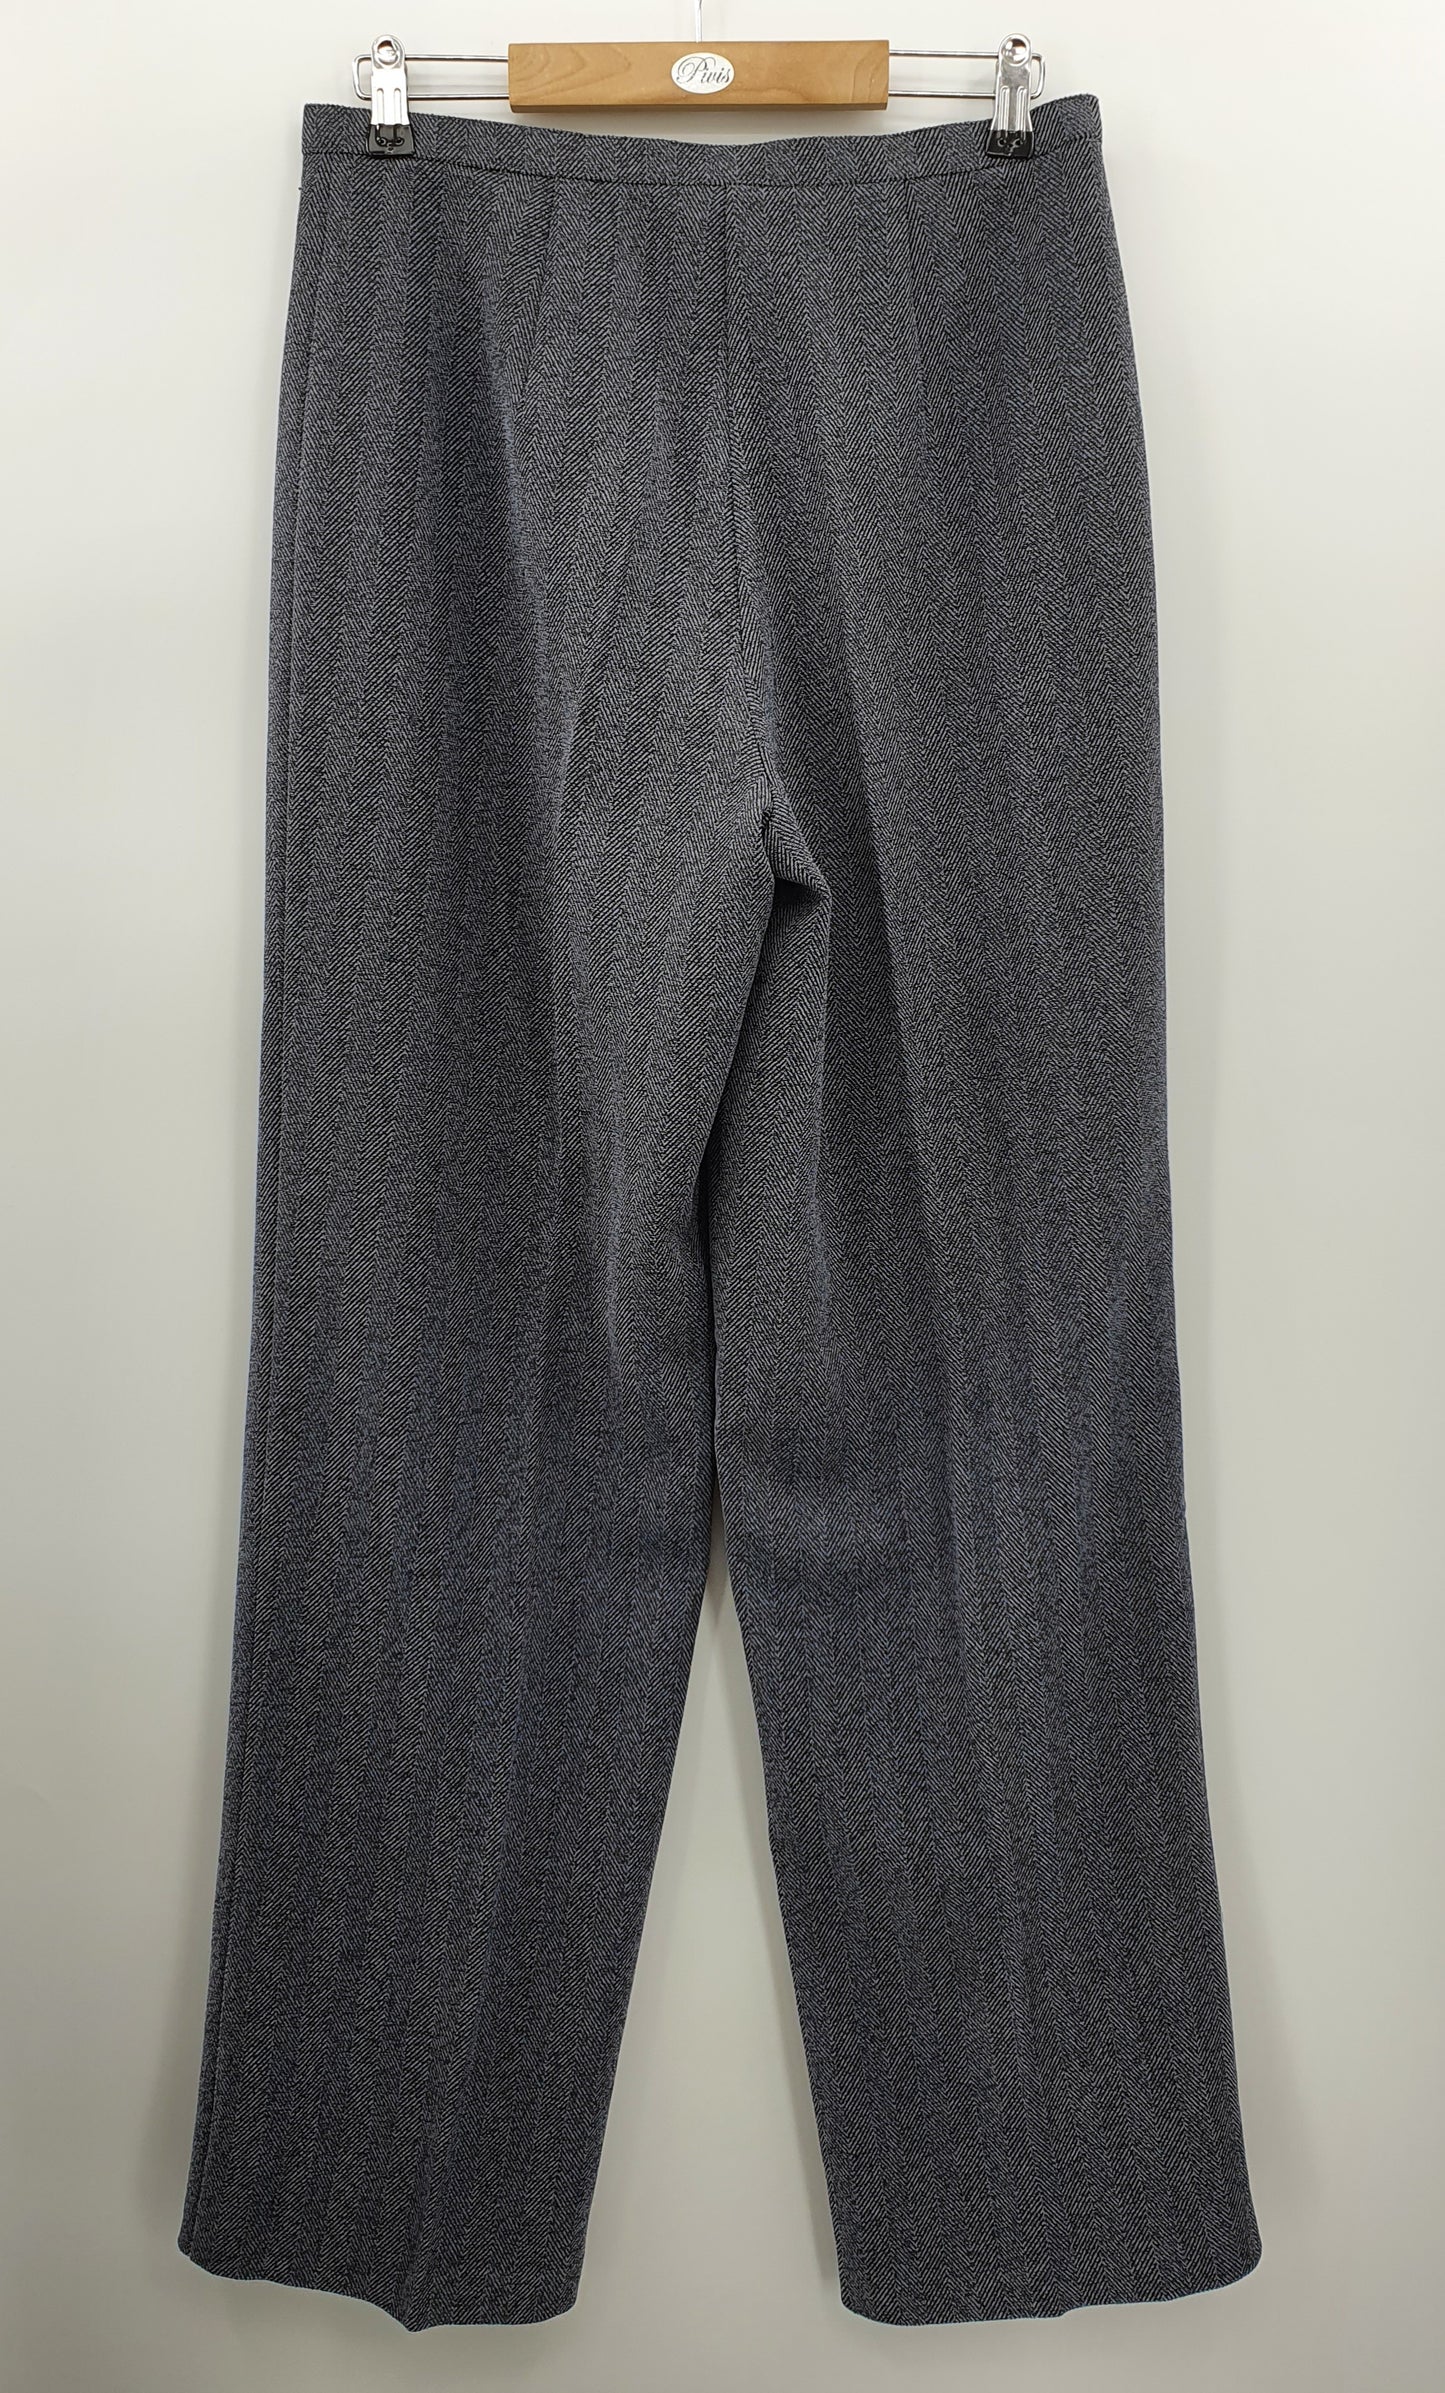 Tazzia, harmaat leveälahkeiset housut, 90-luku, vyöt.ymp. 76cm, kokoarvio 38